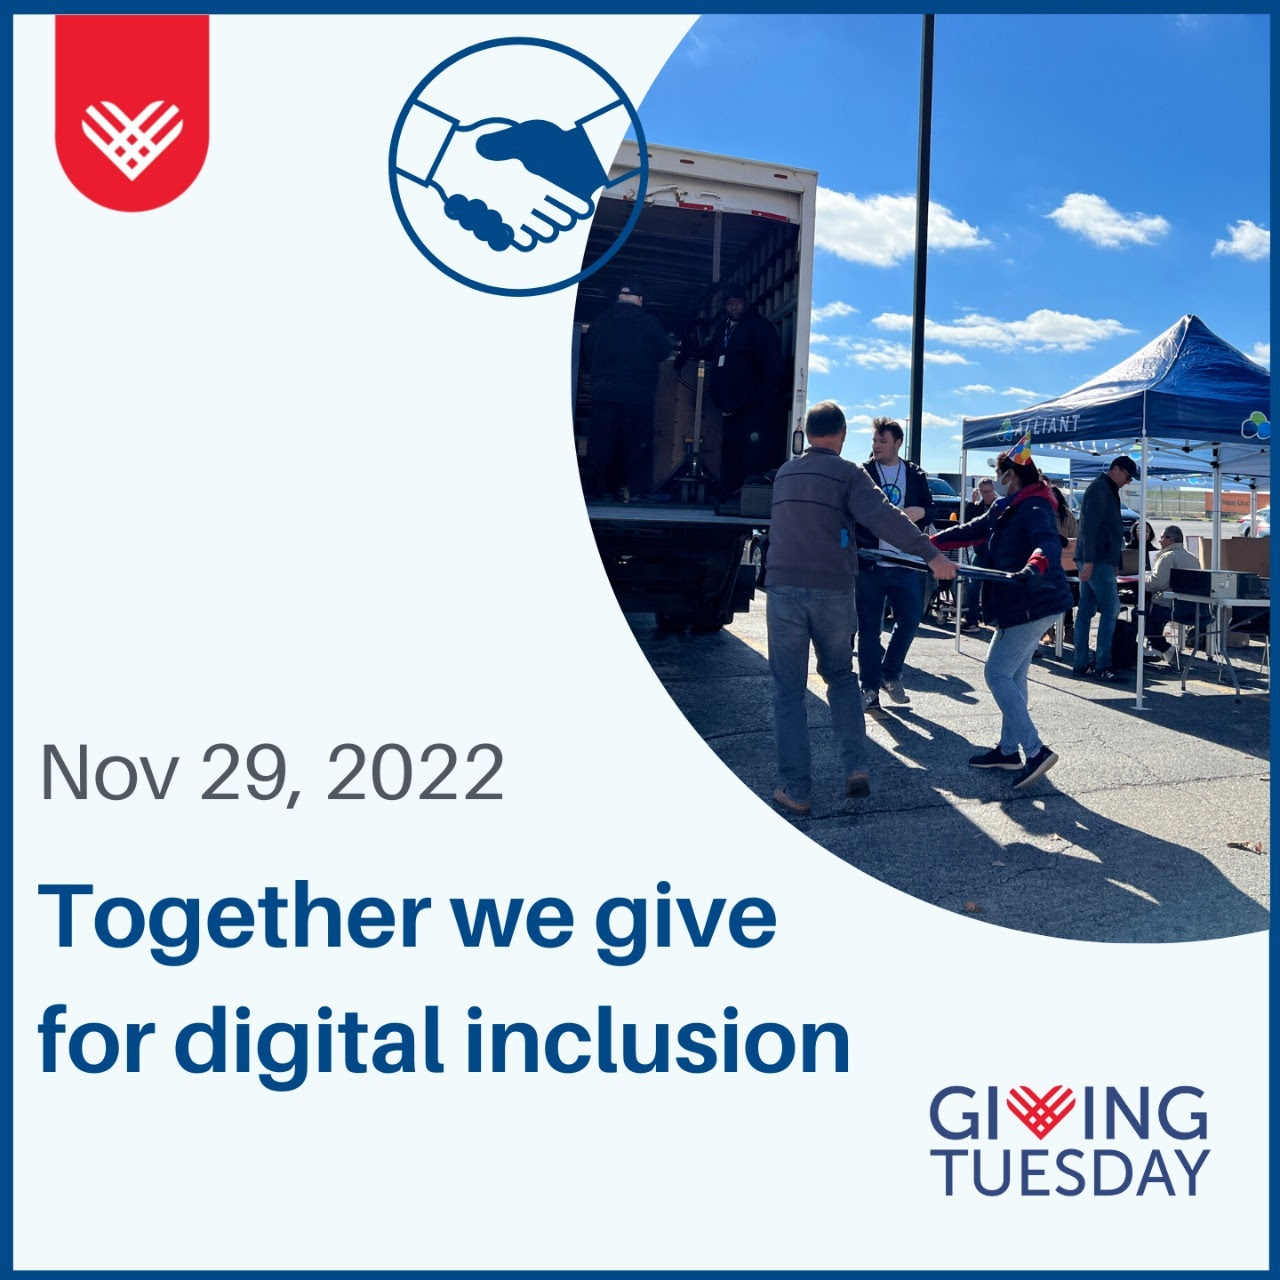 Digital Inclusion Promo - Nov 29,2022 - Together we give